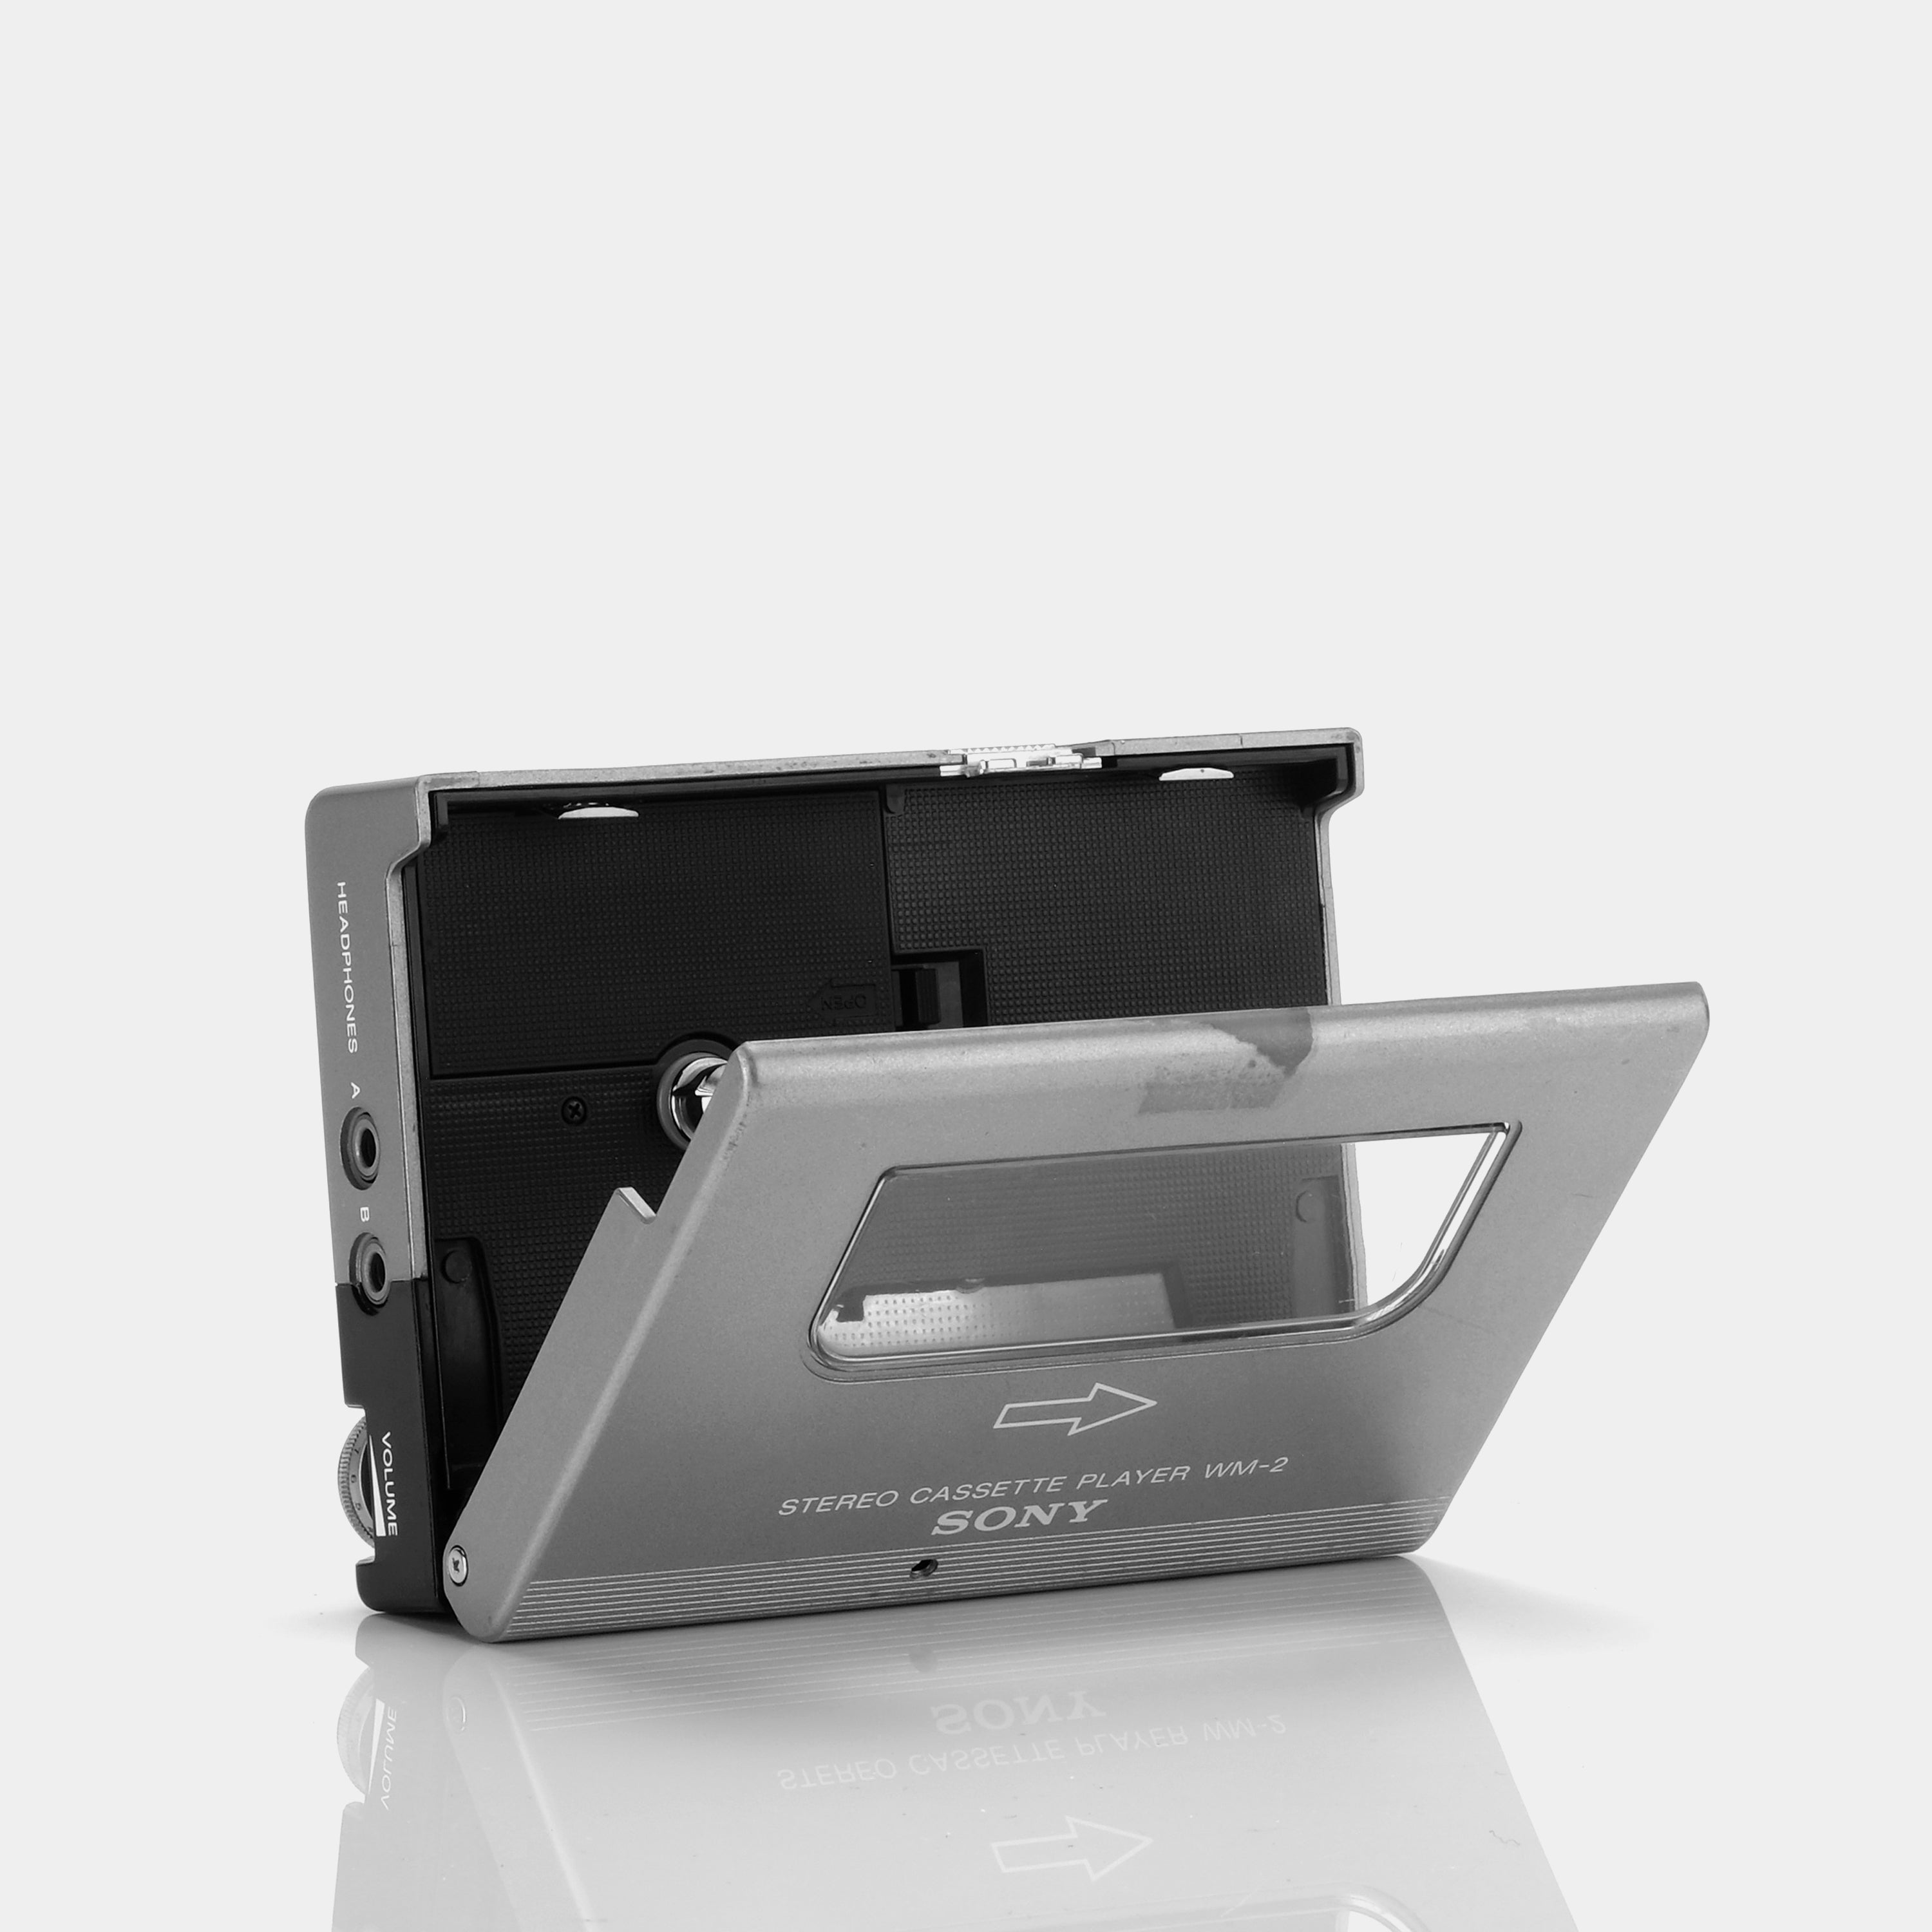 Sony Walkman II WM-2 Silver Portable Cassette Player